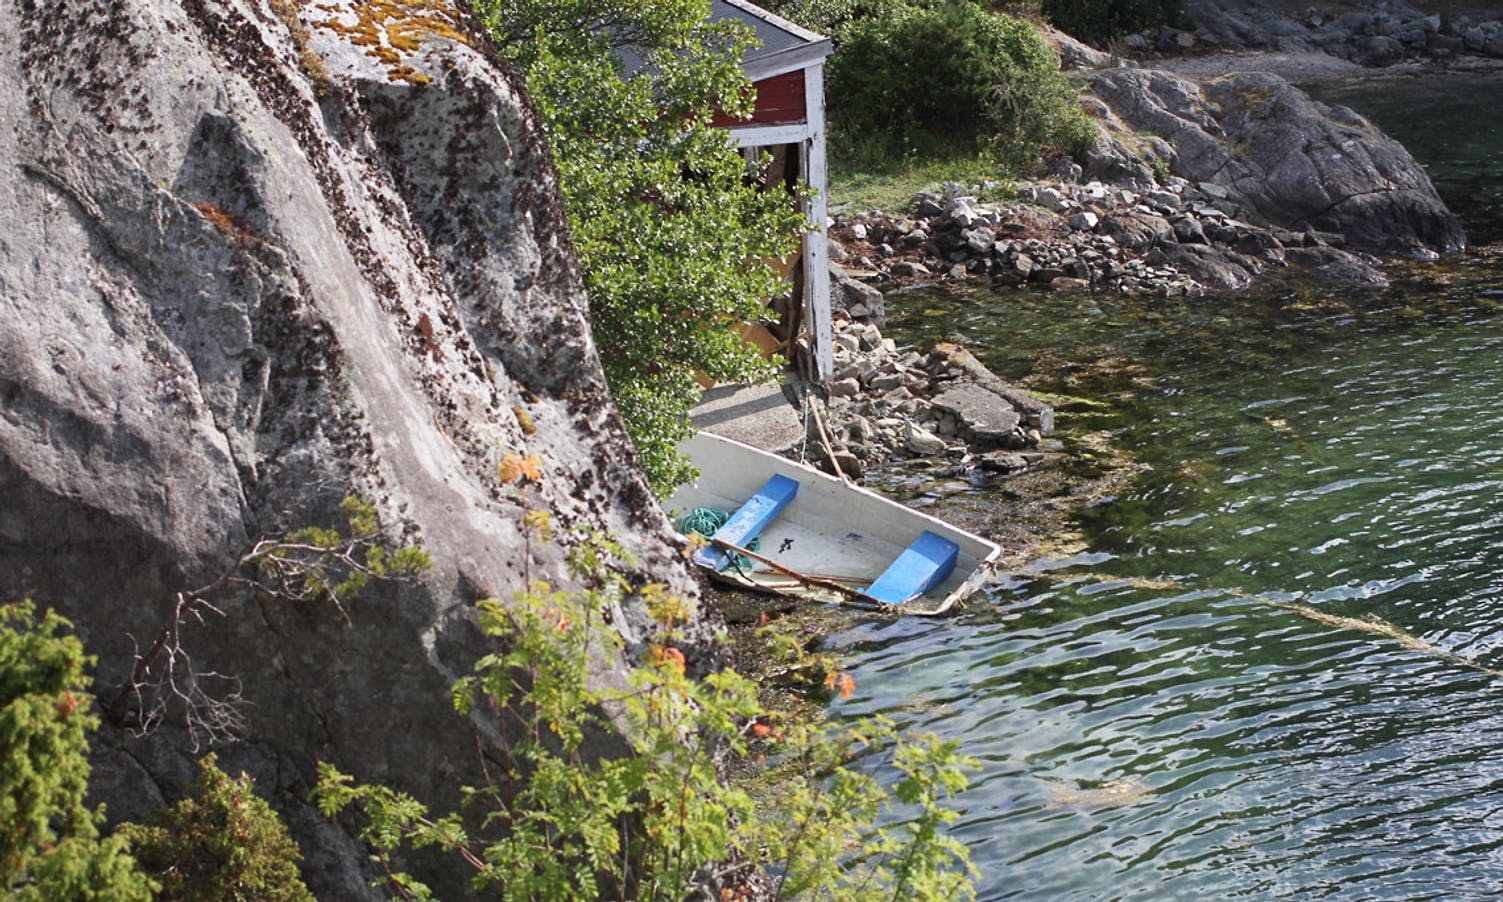 På Askvikneset ligg det fleire båtar som kommunen, som grunneigar, jobbar med å få fjerna (foto: AH)